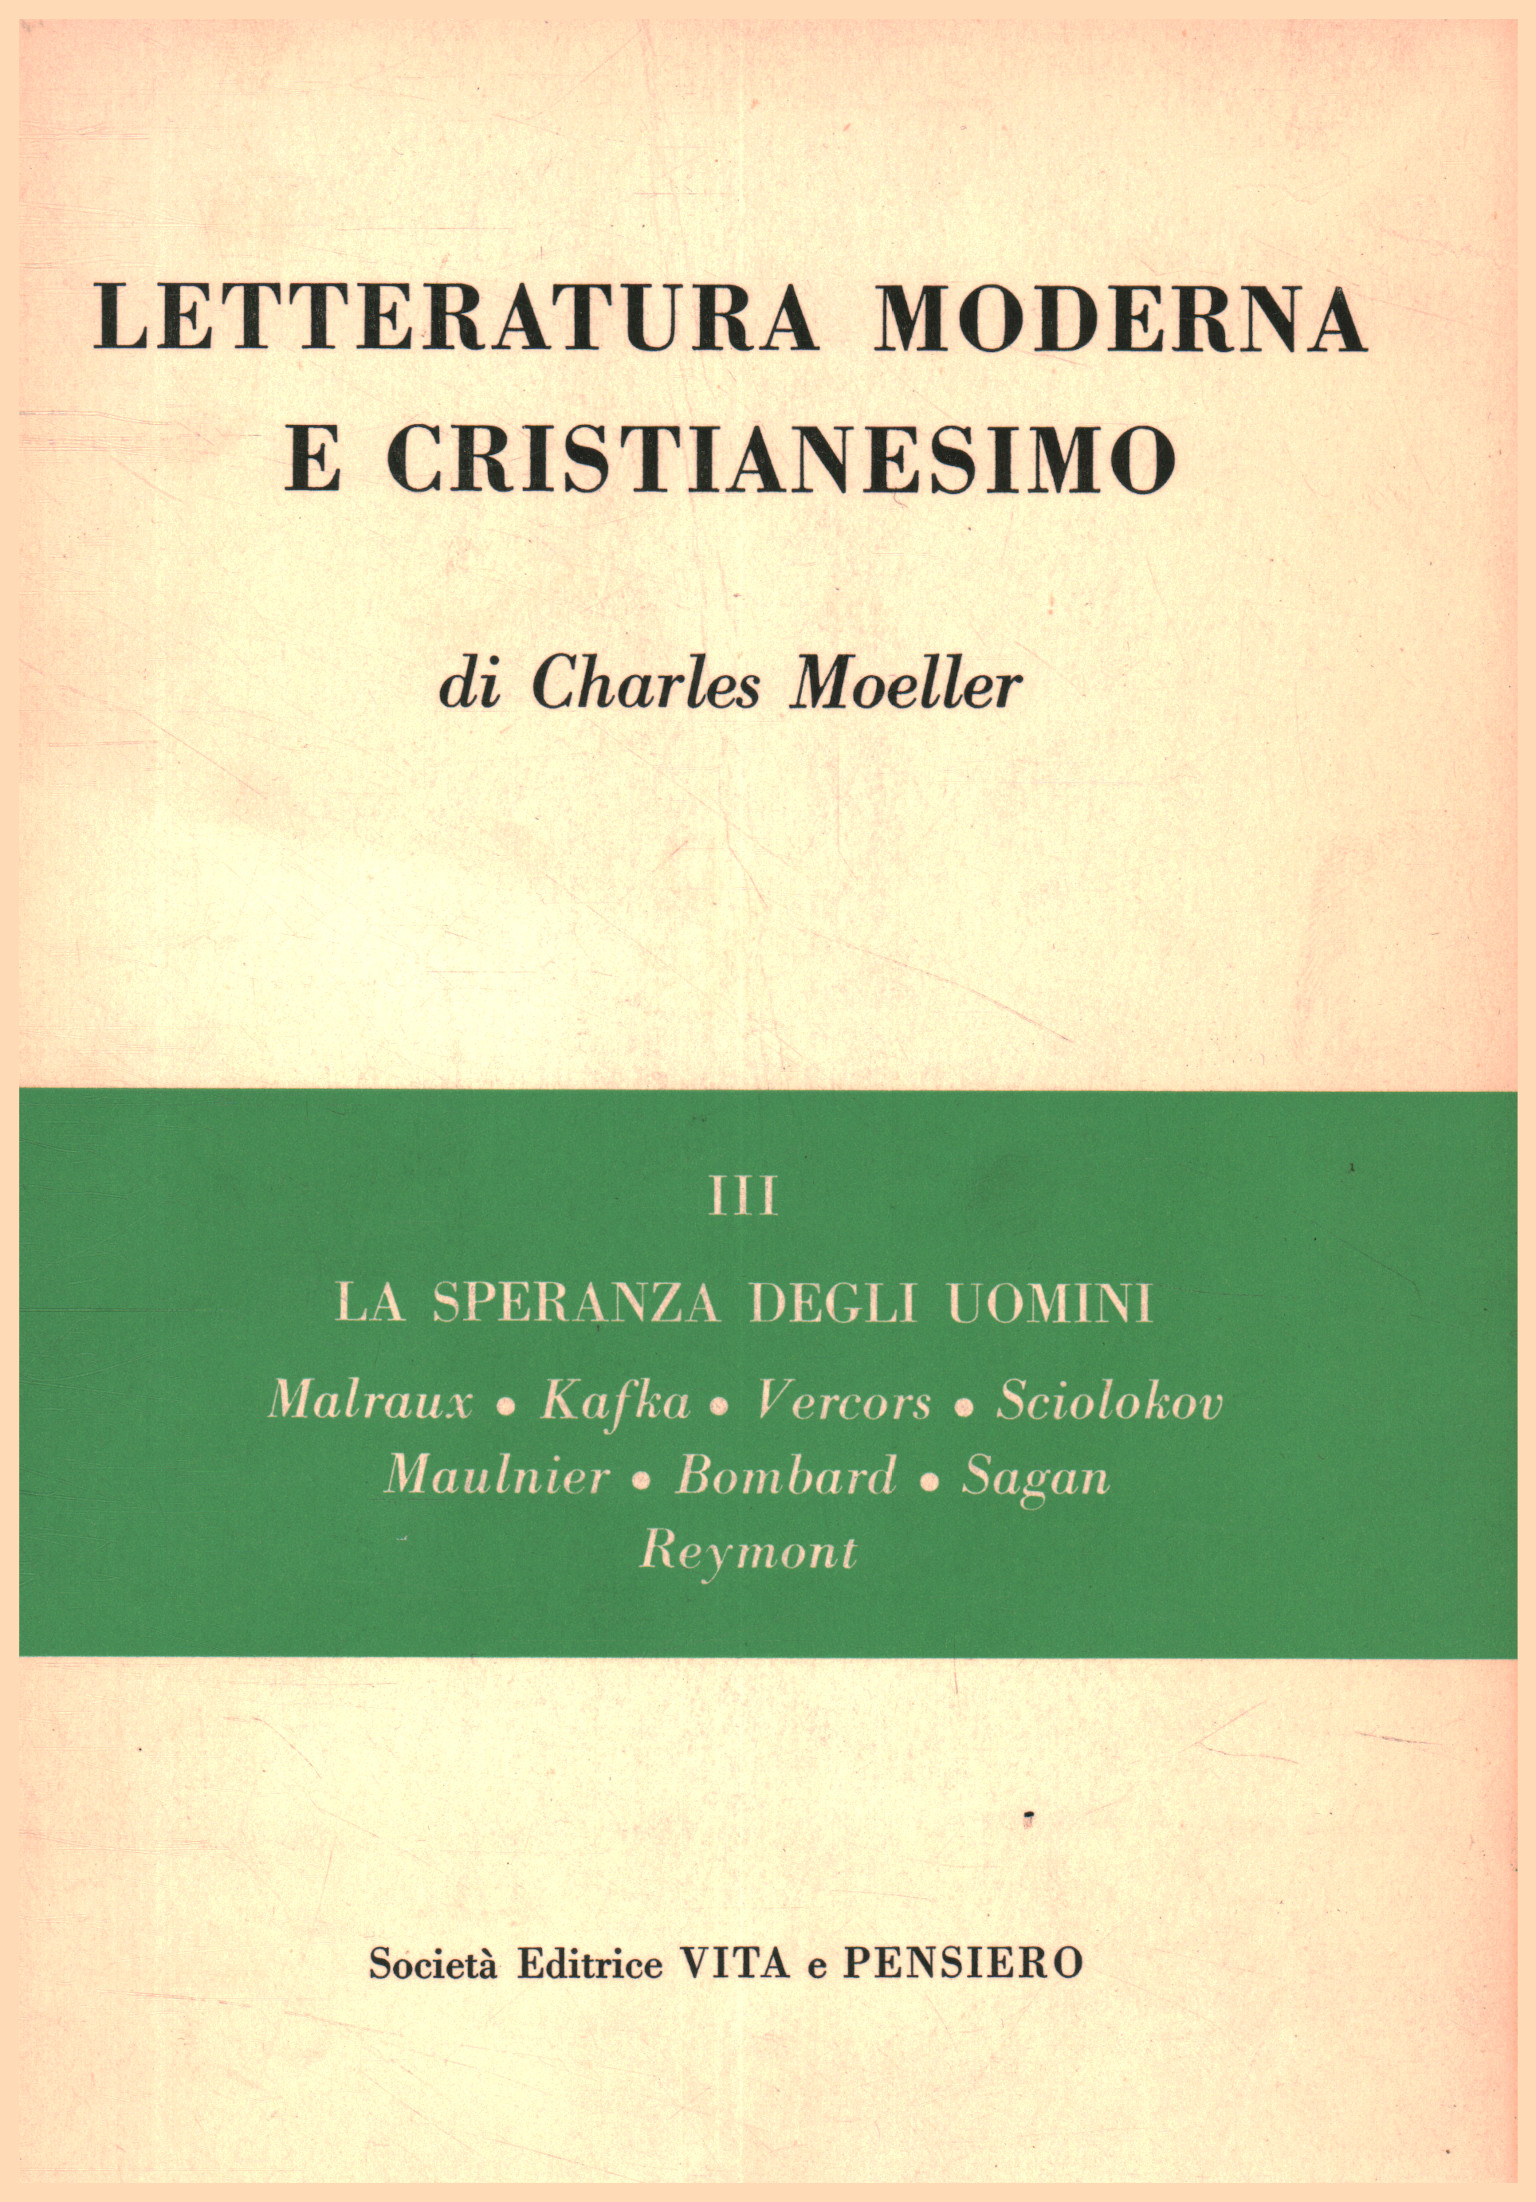 Letteratura moderna e cristianesimo volume